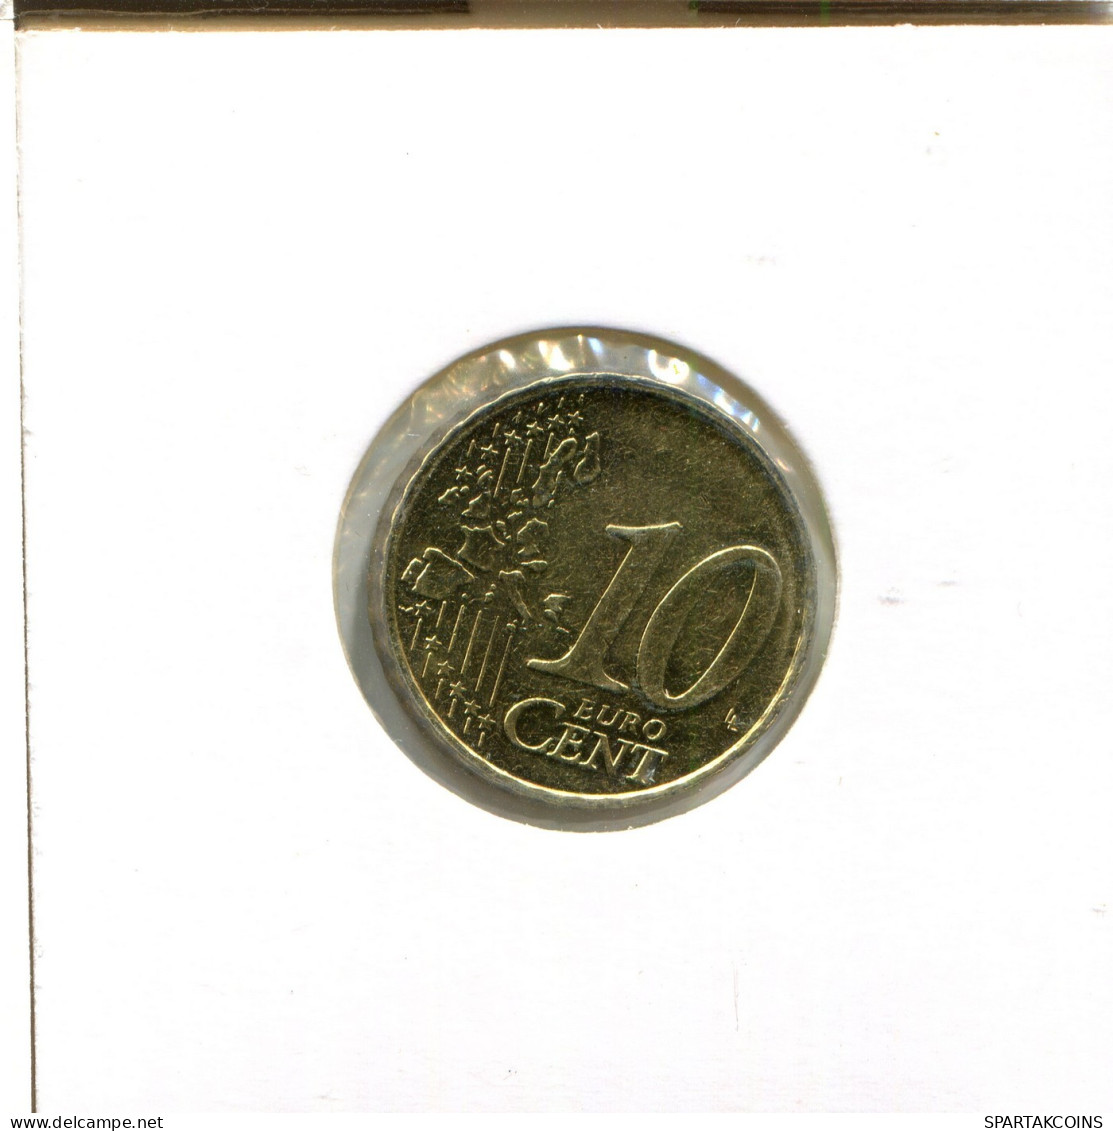 10 EURO CENTS 2001 BÉLGICA BELGIUM Moneda #EU407.E.A - België